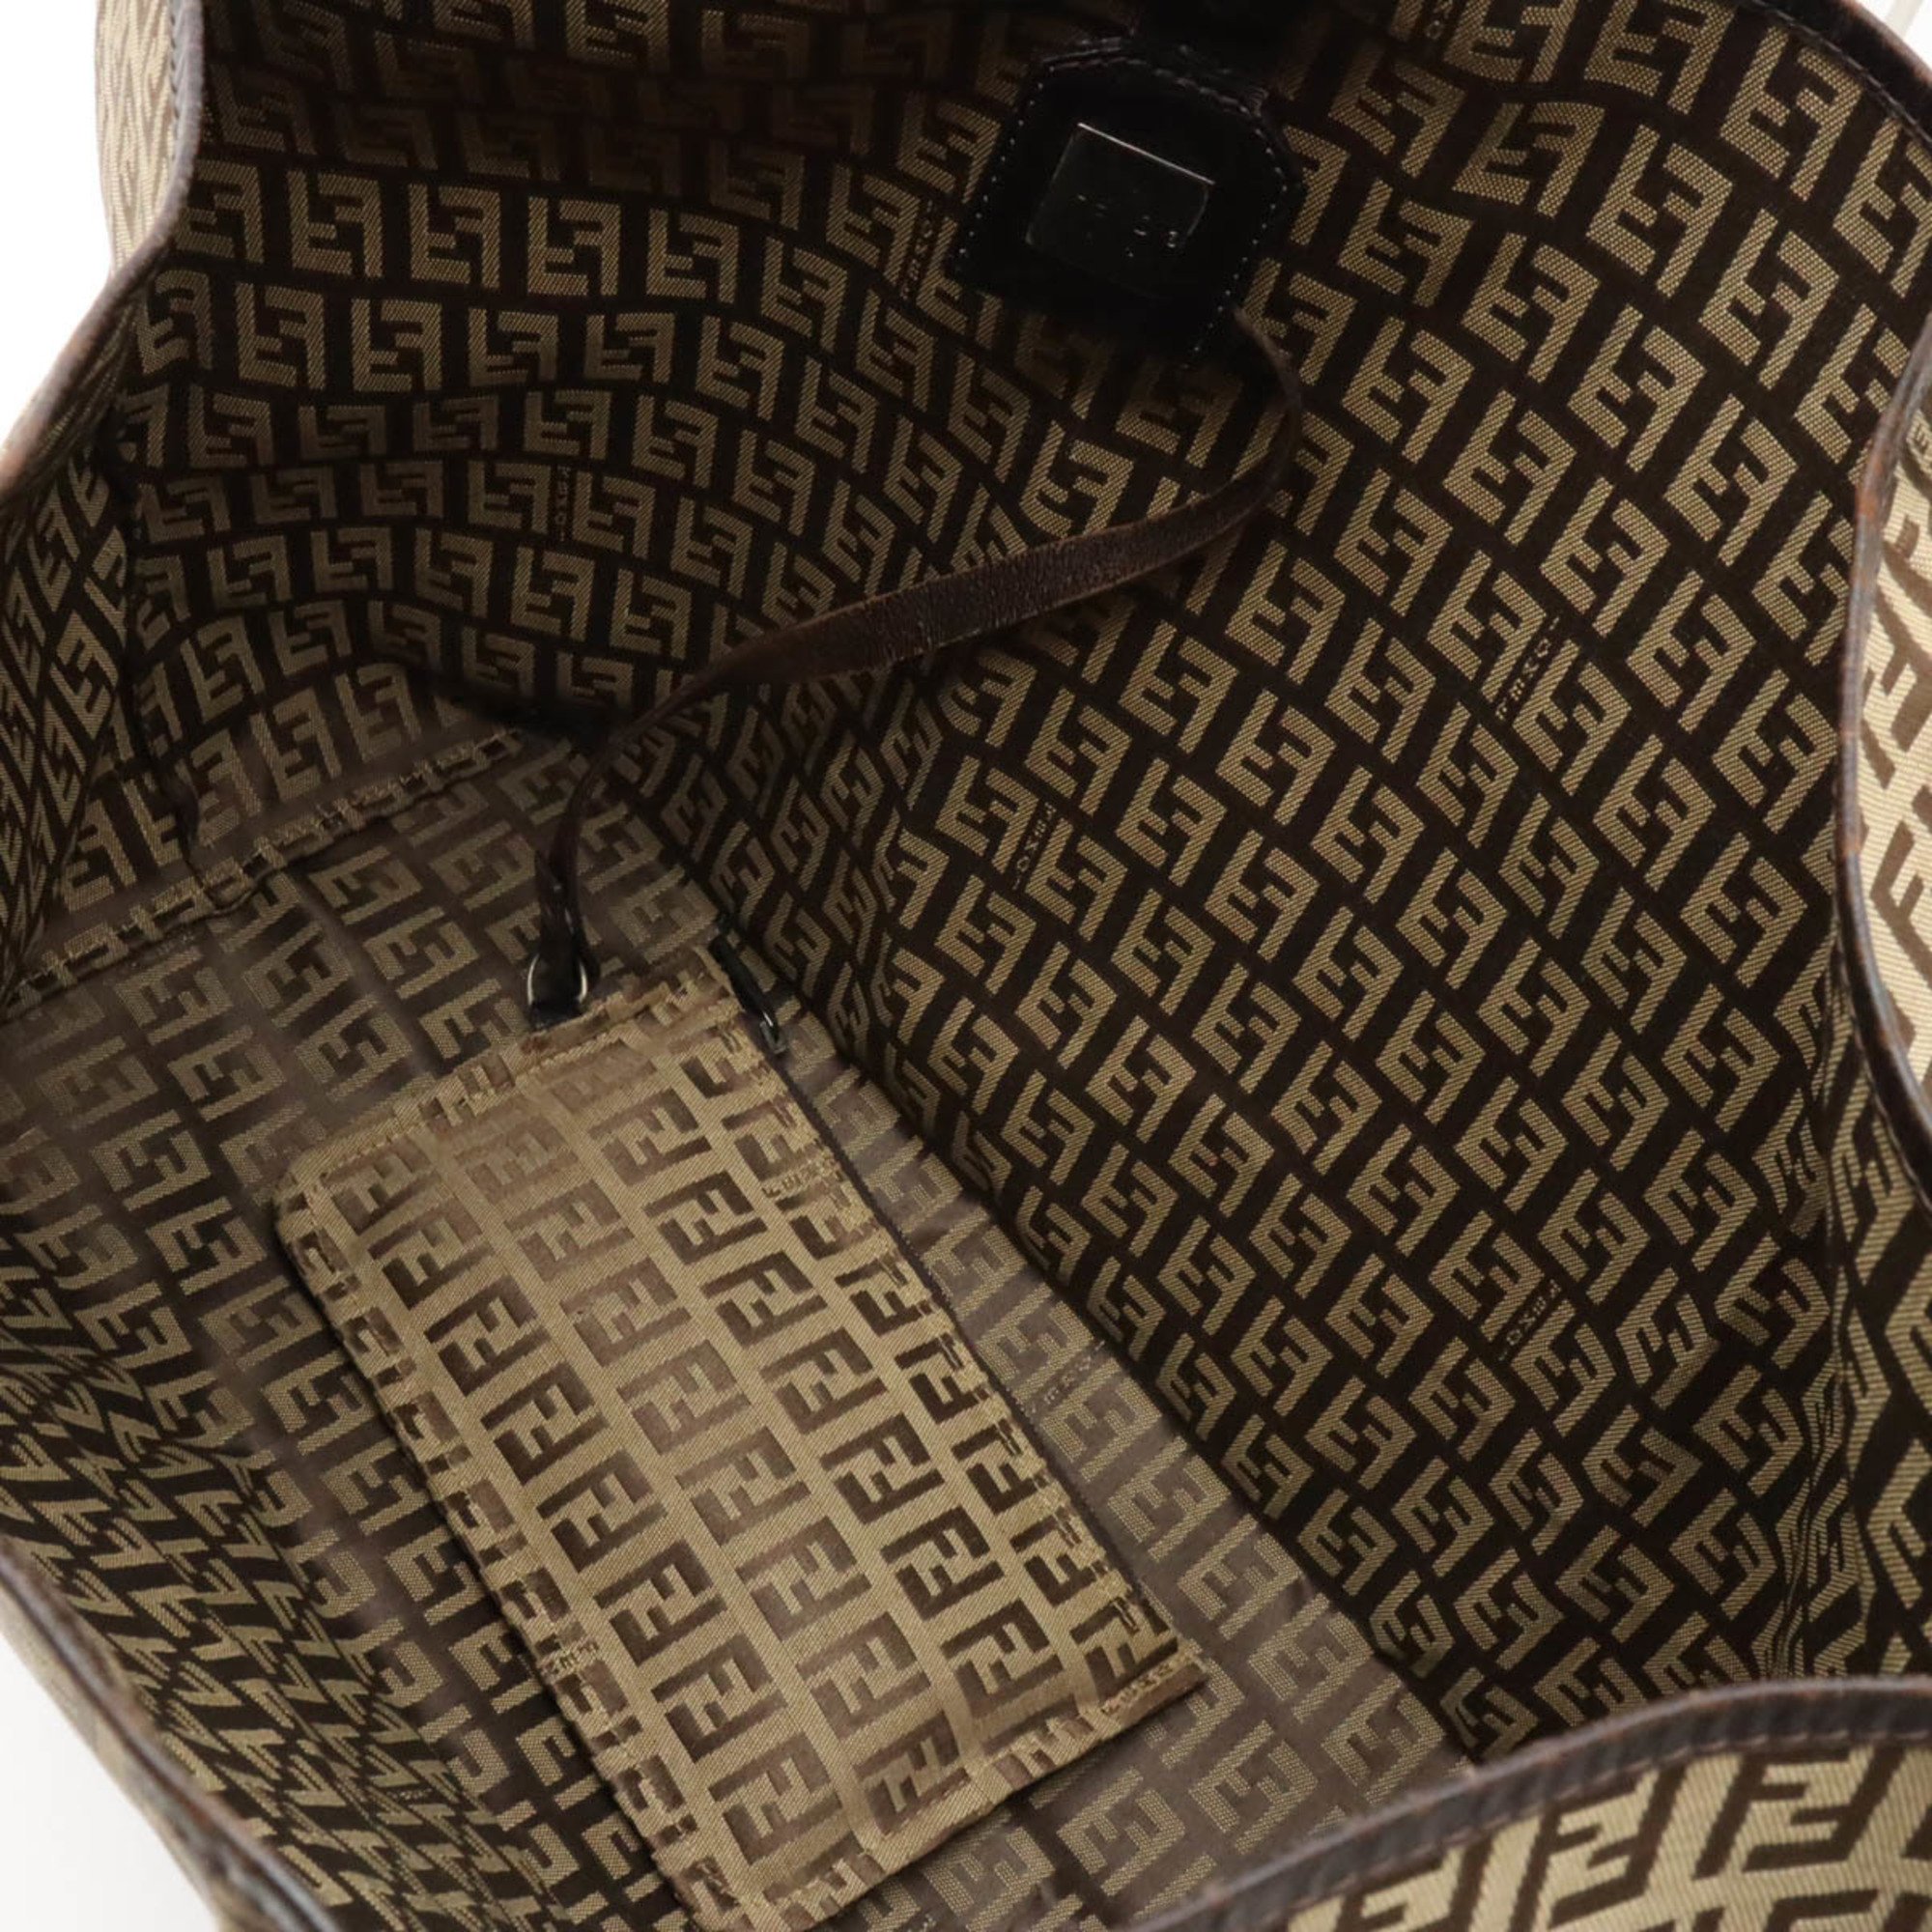 FENDI Zucca pattern tote bag canvas leather beige dark brown 8BH005